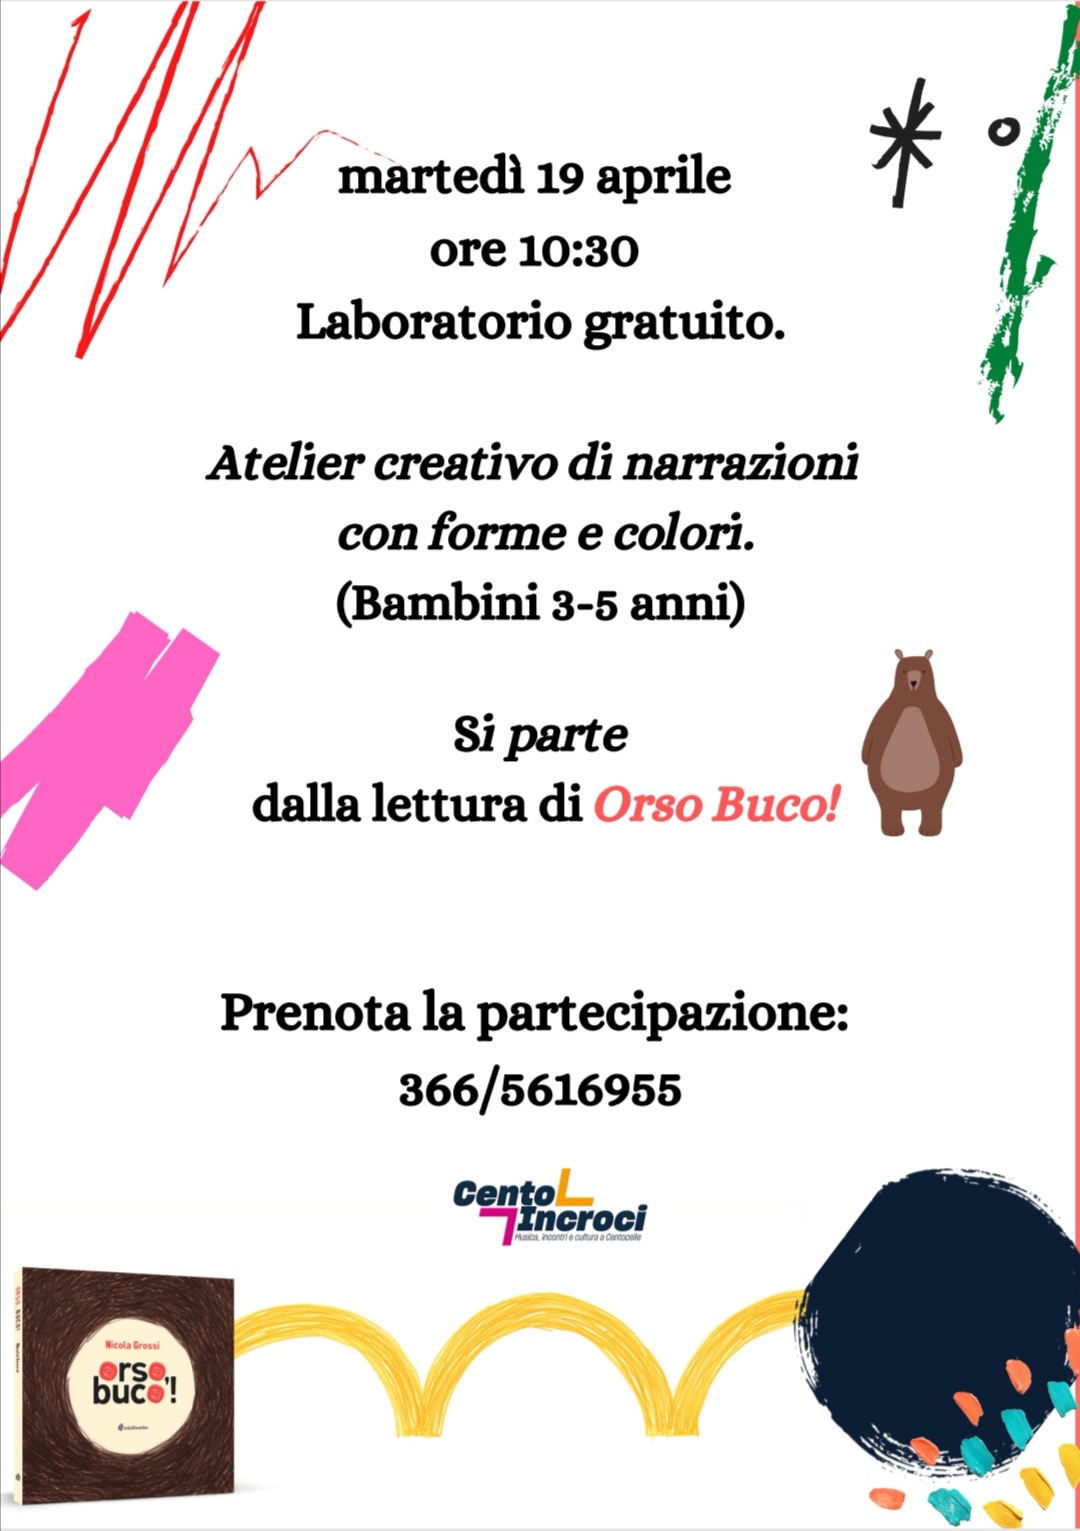 https://centoincroci.regione.lazio.it/app/uploads/2022/04/atelier.jpg